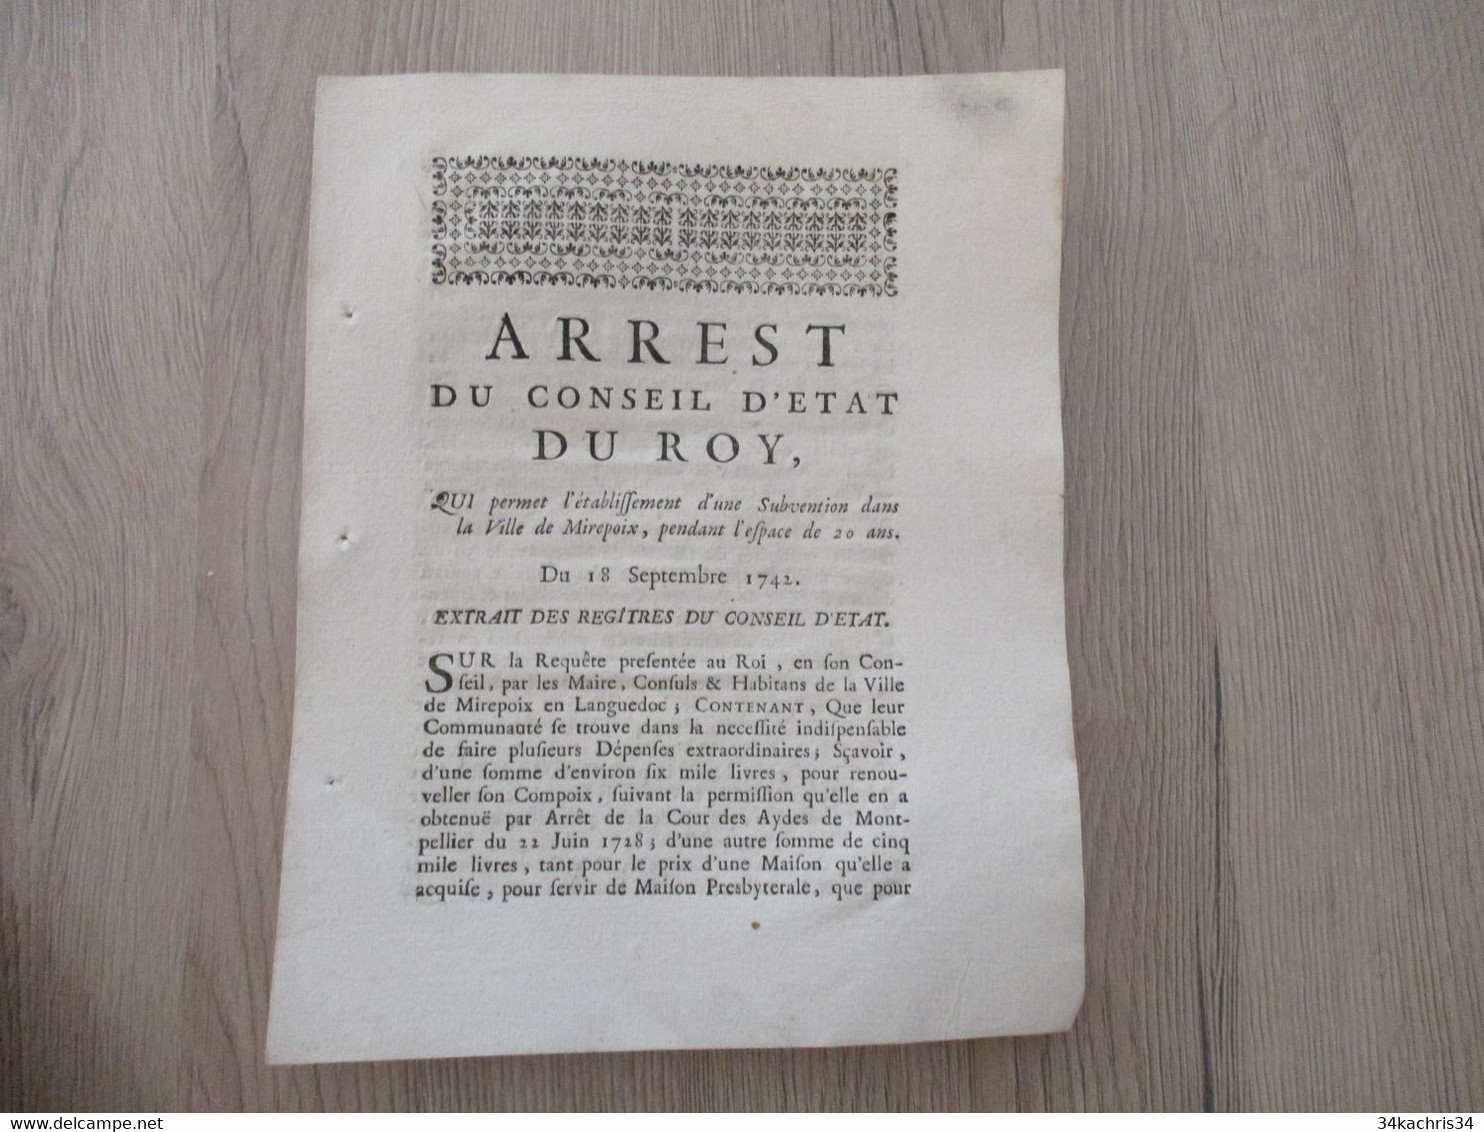 Arrest Du Conseil D'Etat Du Roi 18/9/1742 établissement D'une Subvention Dans La Ville De Mirepoix - Decrees & Laws